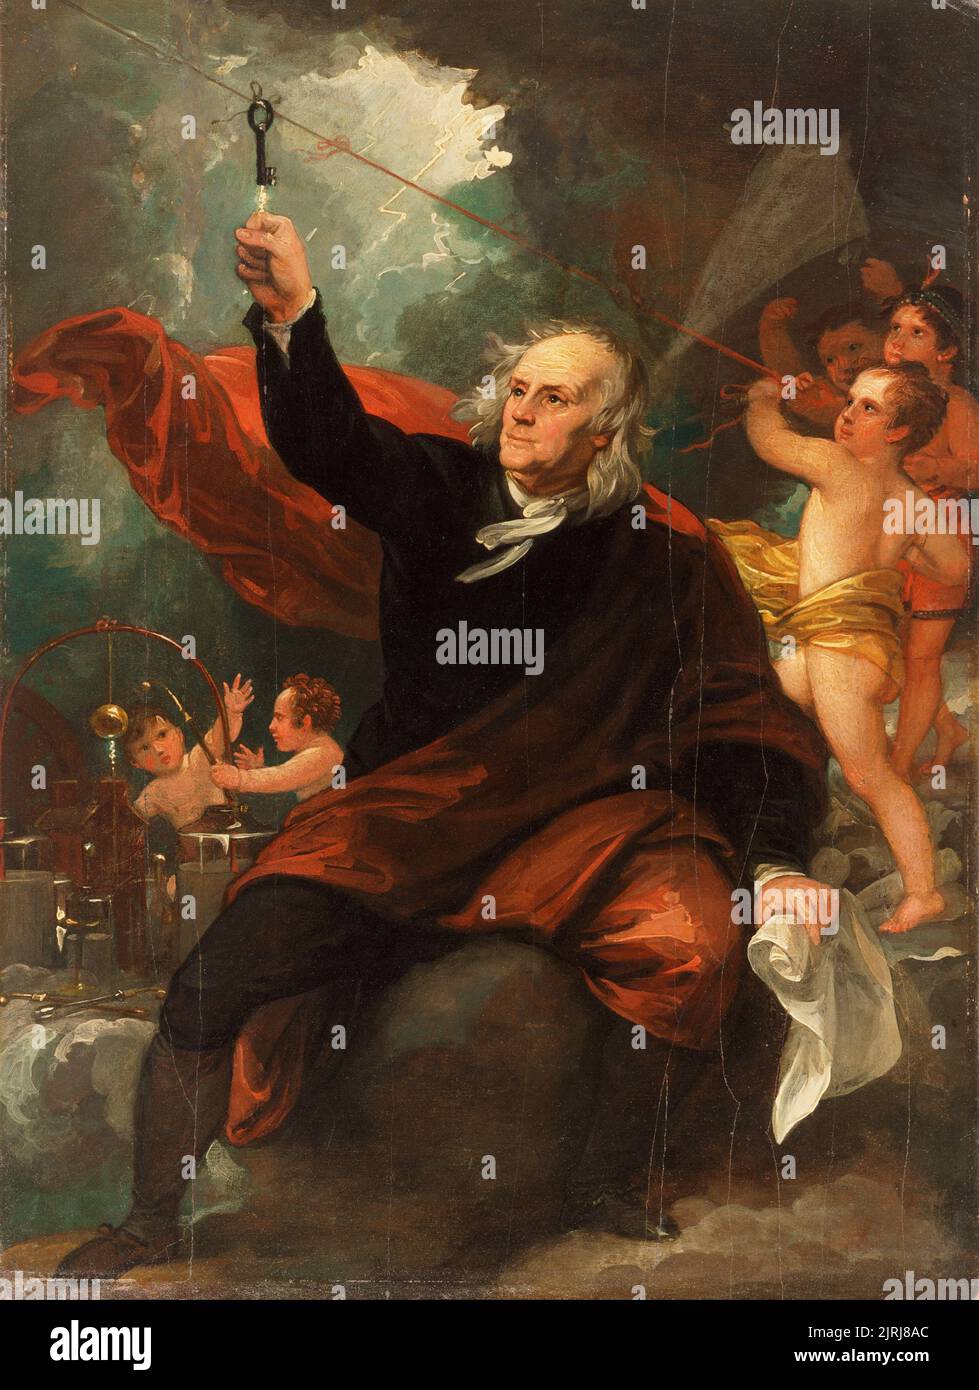 Benjamin Franklin Drawing Electricity from the Sky gemalt von Benjamin West. Das Gemälde zeigt Franklin, wie er seine Idee testet, dass der Blitz ein elektrisches Phänomen ist Stockfoto